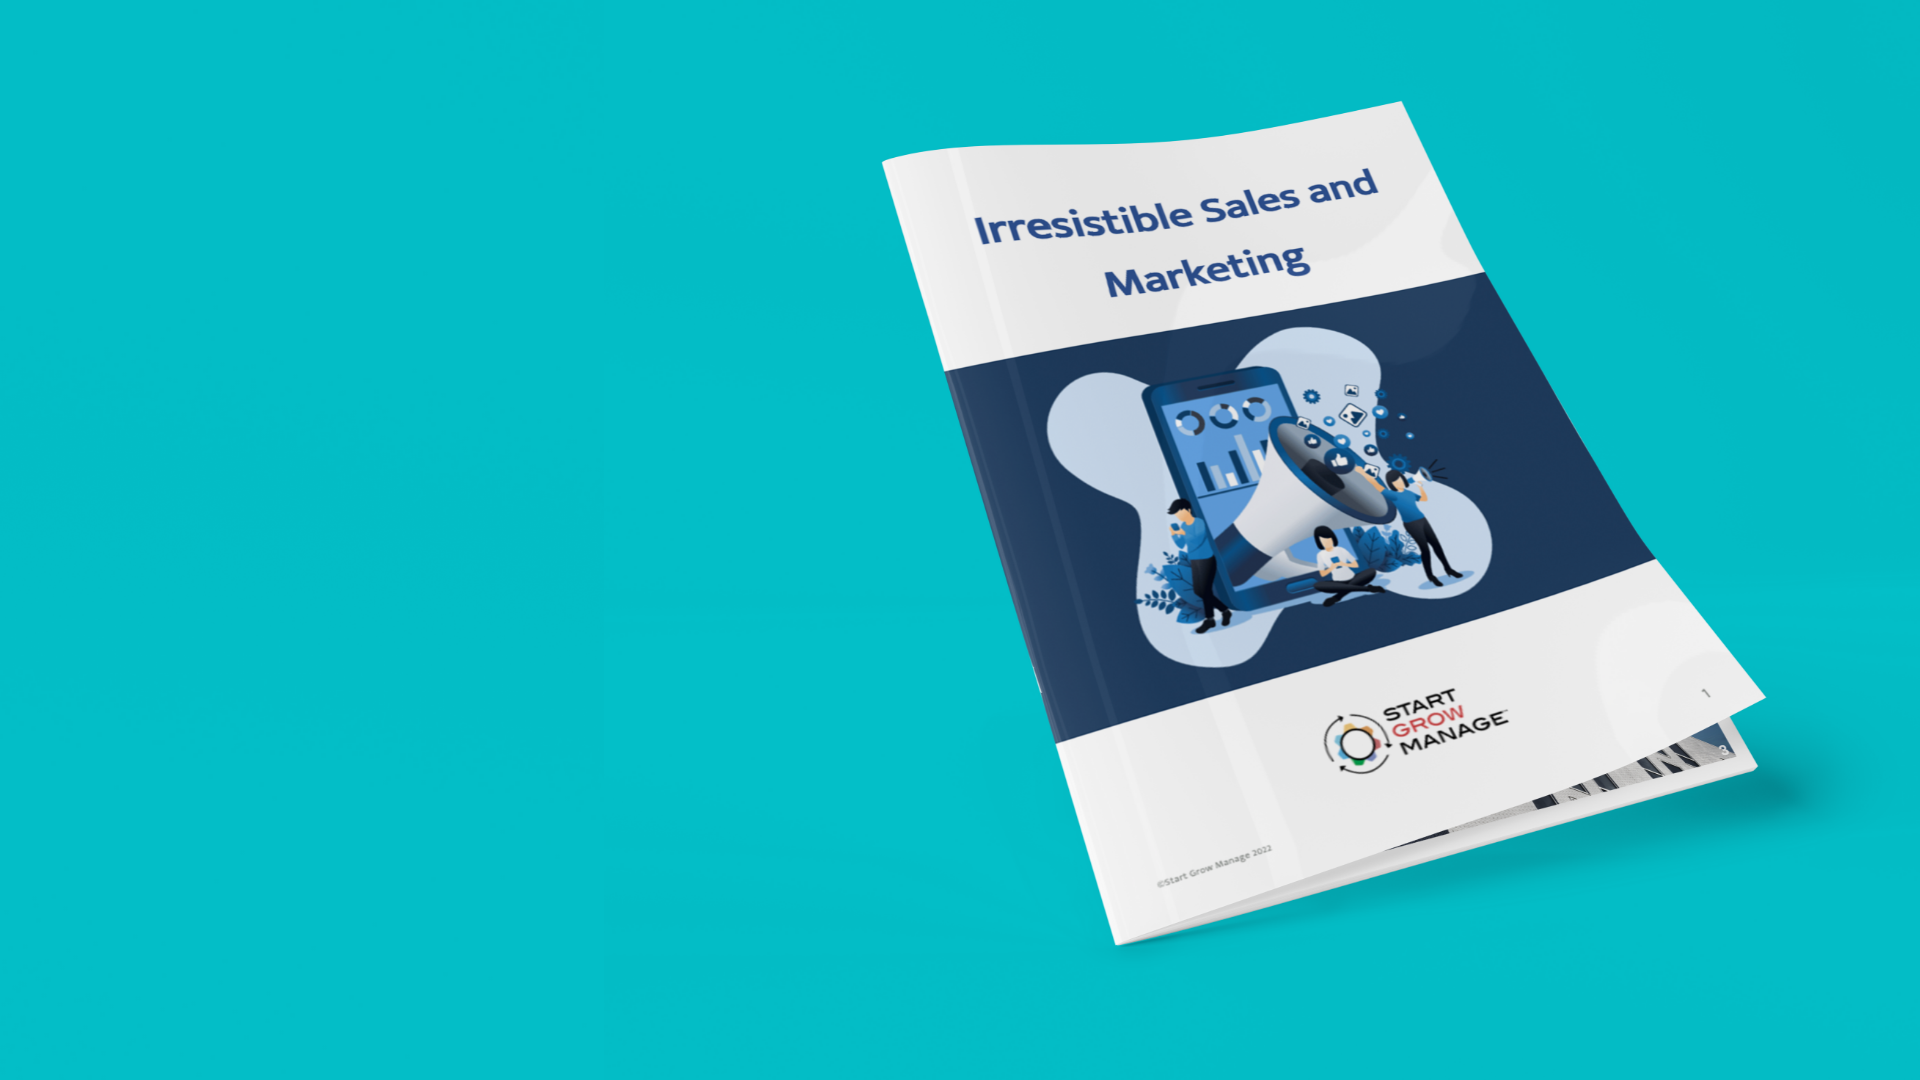 Irresistible Sales and Marketing Manual